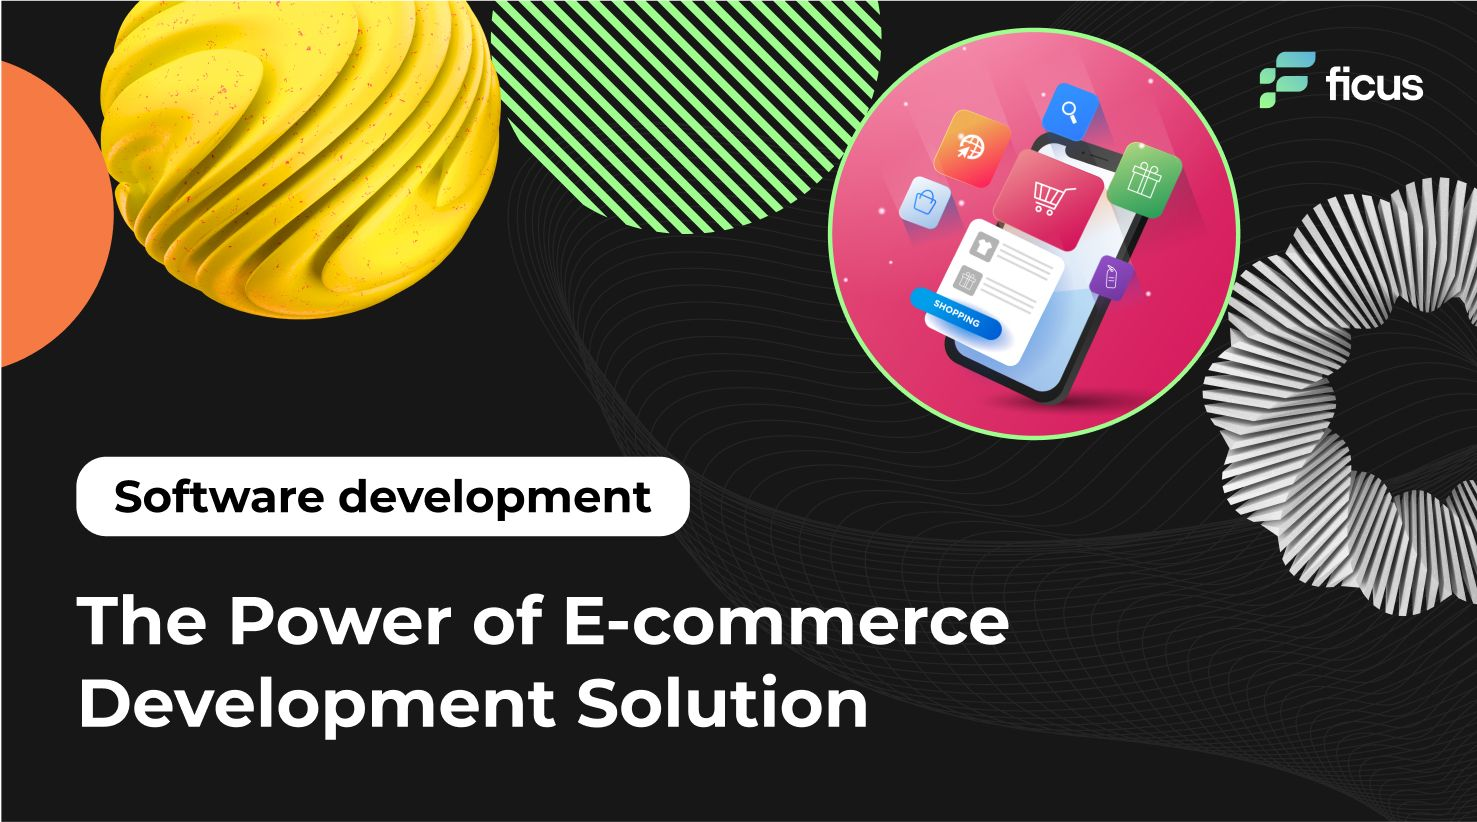 The Power of E-commerce Development Solution